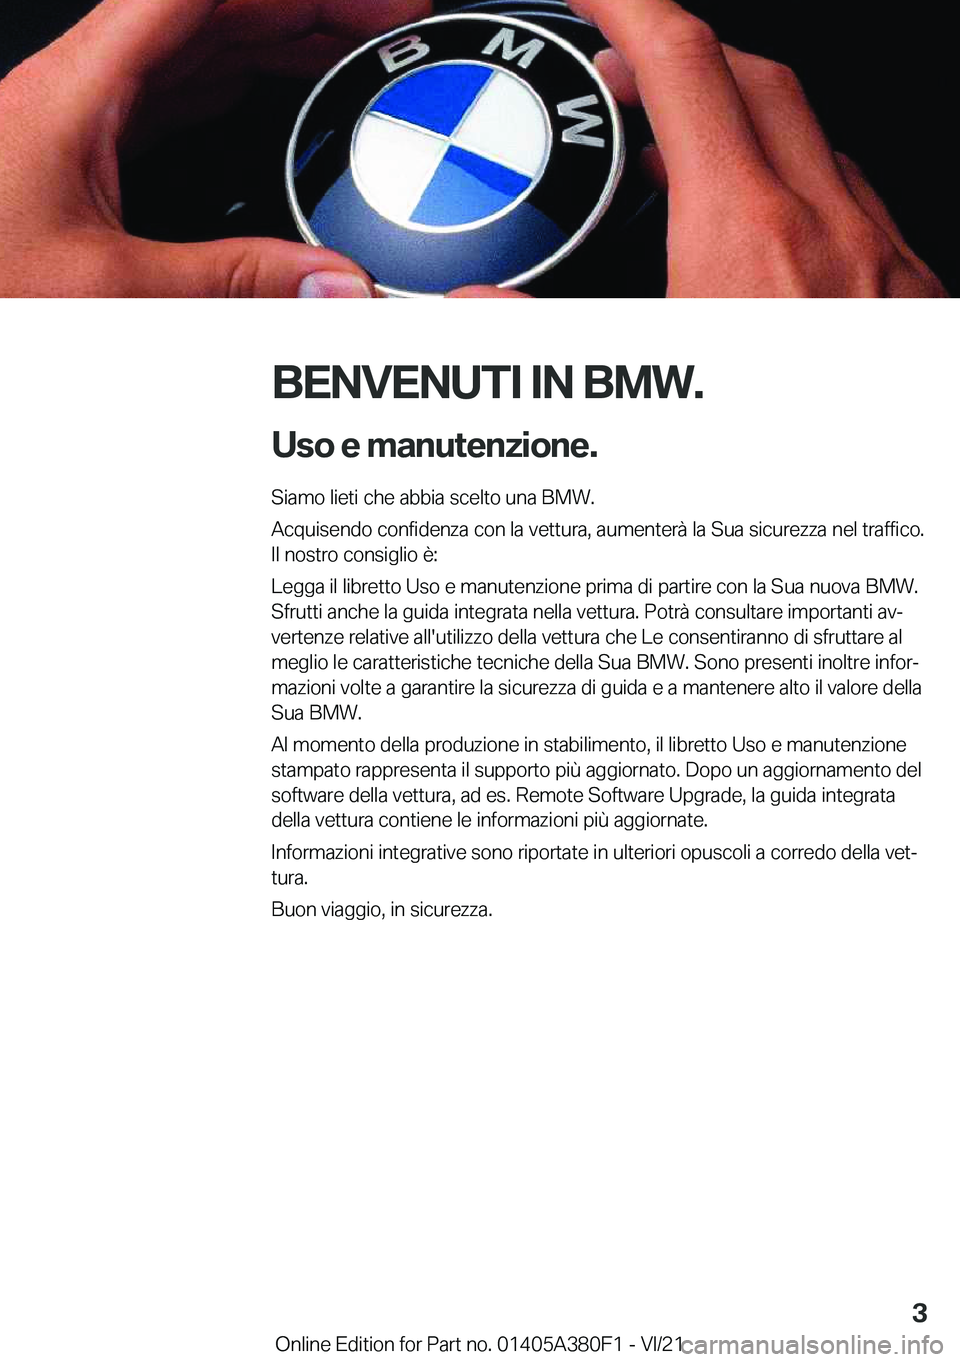 BMW 5 SERIES 2022  Libretti Di Uso E manutenzione (in Italian) �B�E�N�V�E�N�U�T�I��I�N��B�M�W�.�U�s�o��e��m�a�n�u�t�e�n�z�i�o�n�e�.
�S�i�a�m�o��l�i�e�t�i��c�h�e��a�b�b�i�a��s�c�e�l�t�o��u�n�a��B�M�W�.
�A�c�q�u�i�s�e�n�d�o��c�o�n�f�i�d�e�n�z�a��c�o�n�